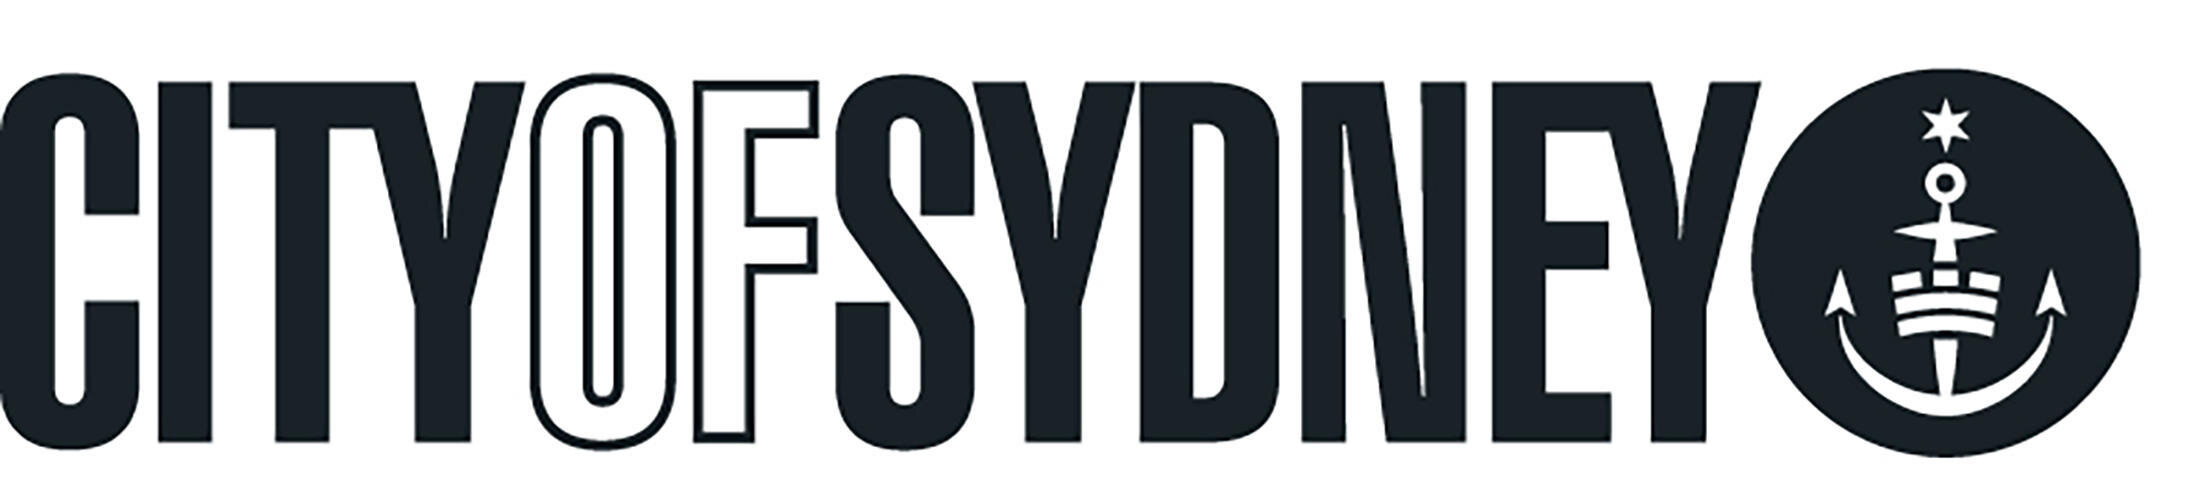 City of Sydney Logo.jpg